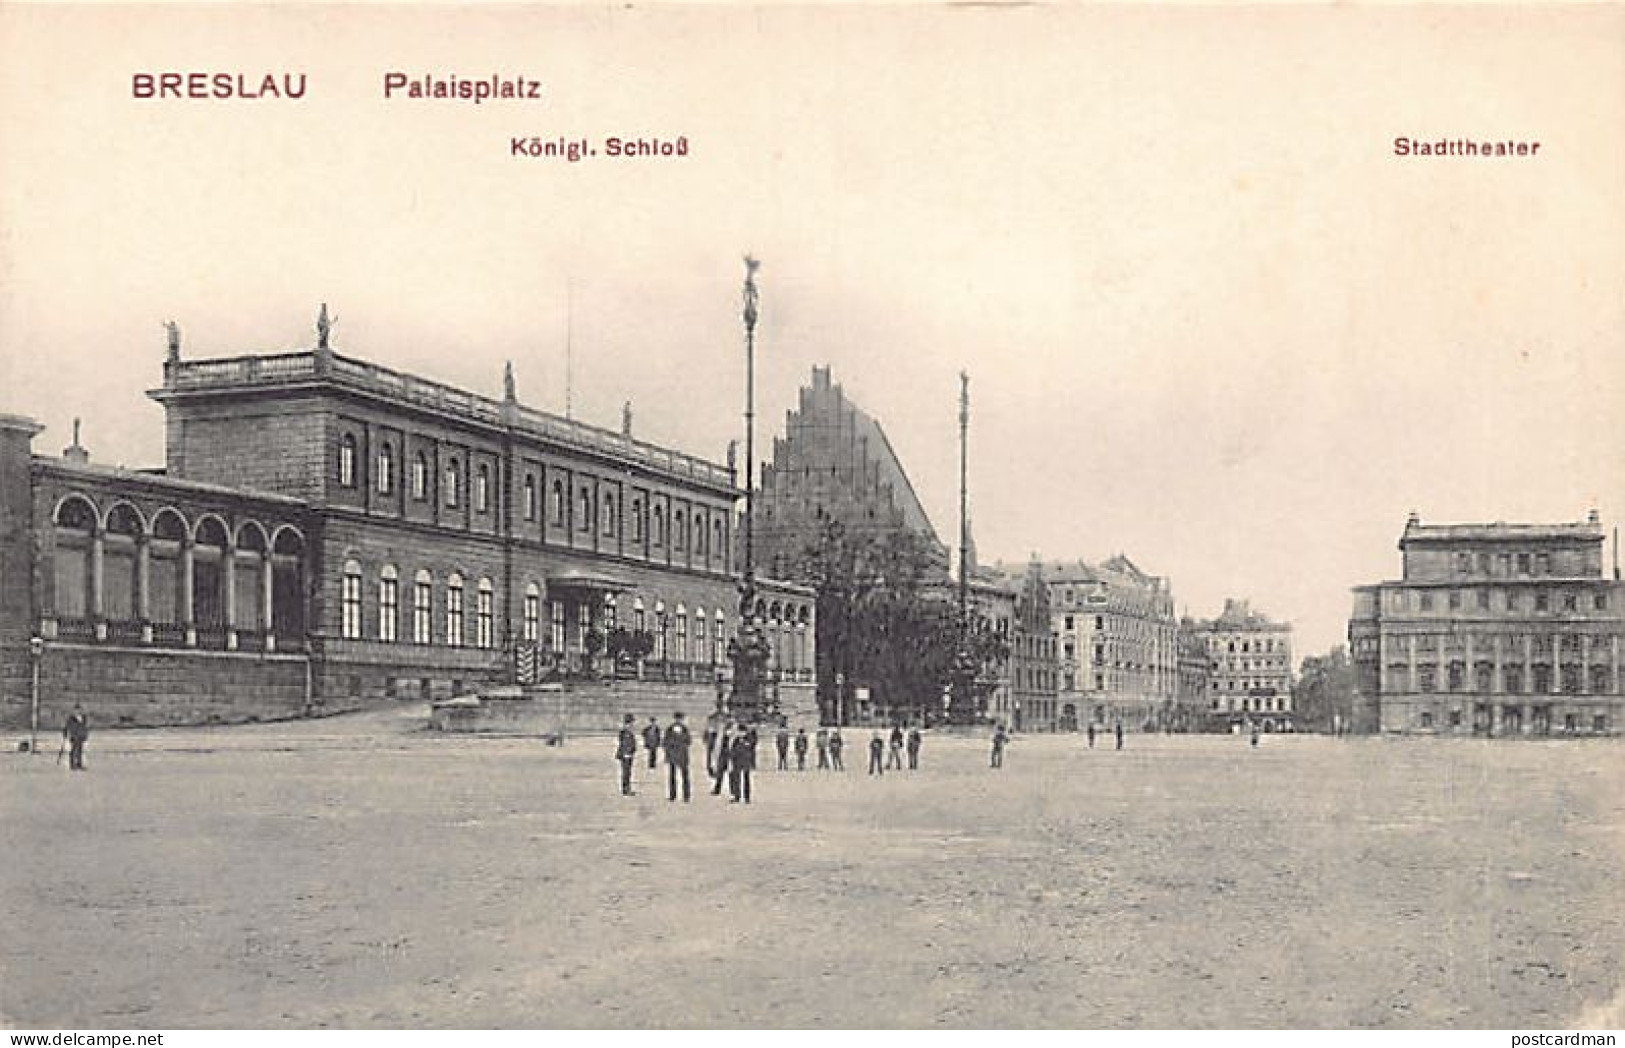 POLSKA Poland - WROCŁAW Breslau - Palaisplatz - Polen